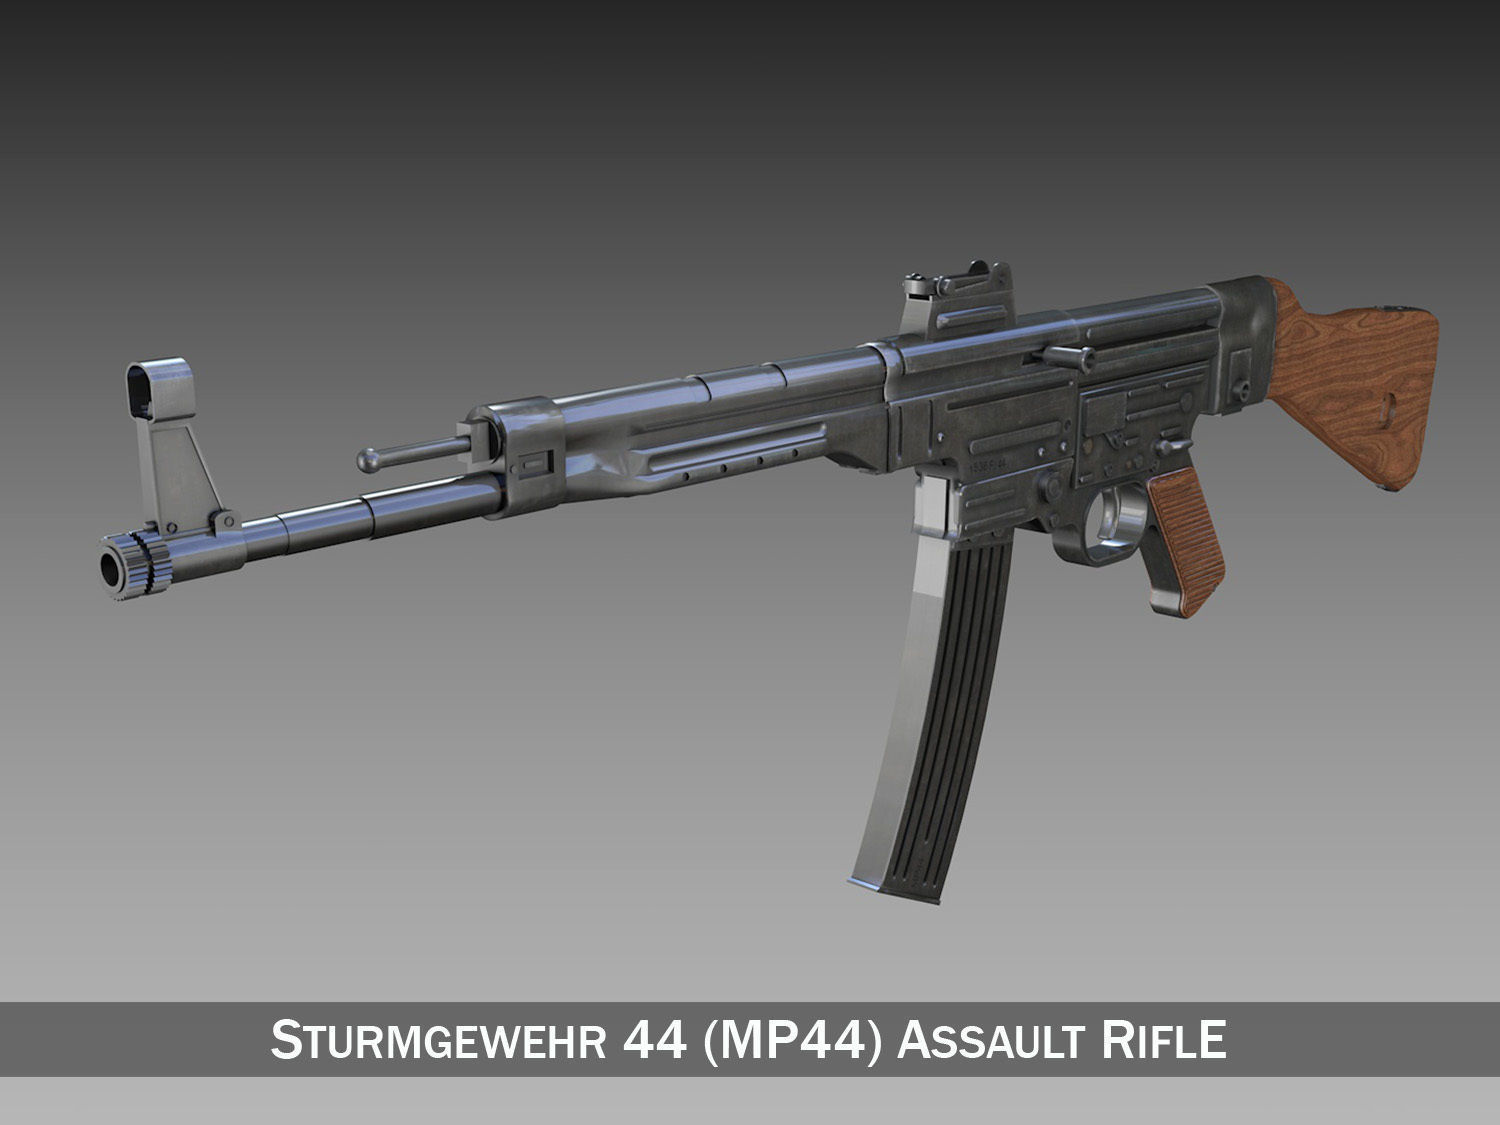 High Resolution Wallpaper | Sturmgewehr 44 Assault Rifle 1500x1125 px